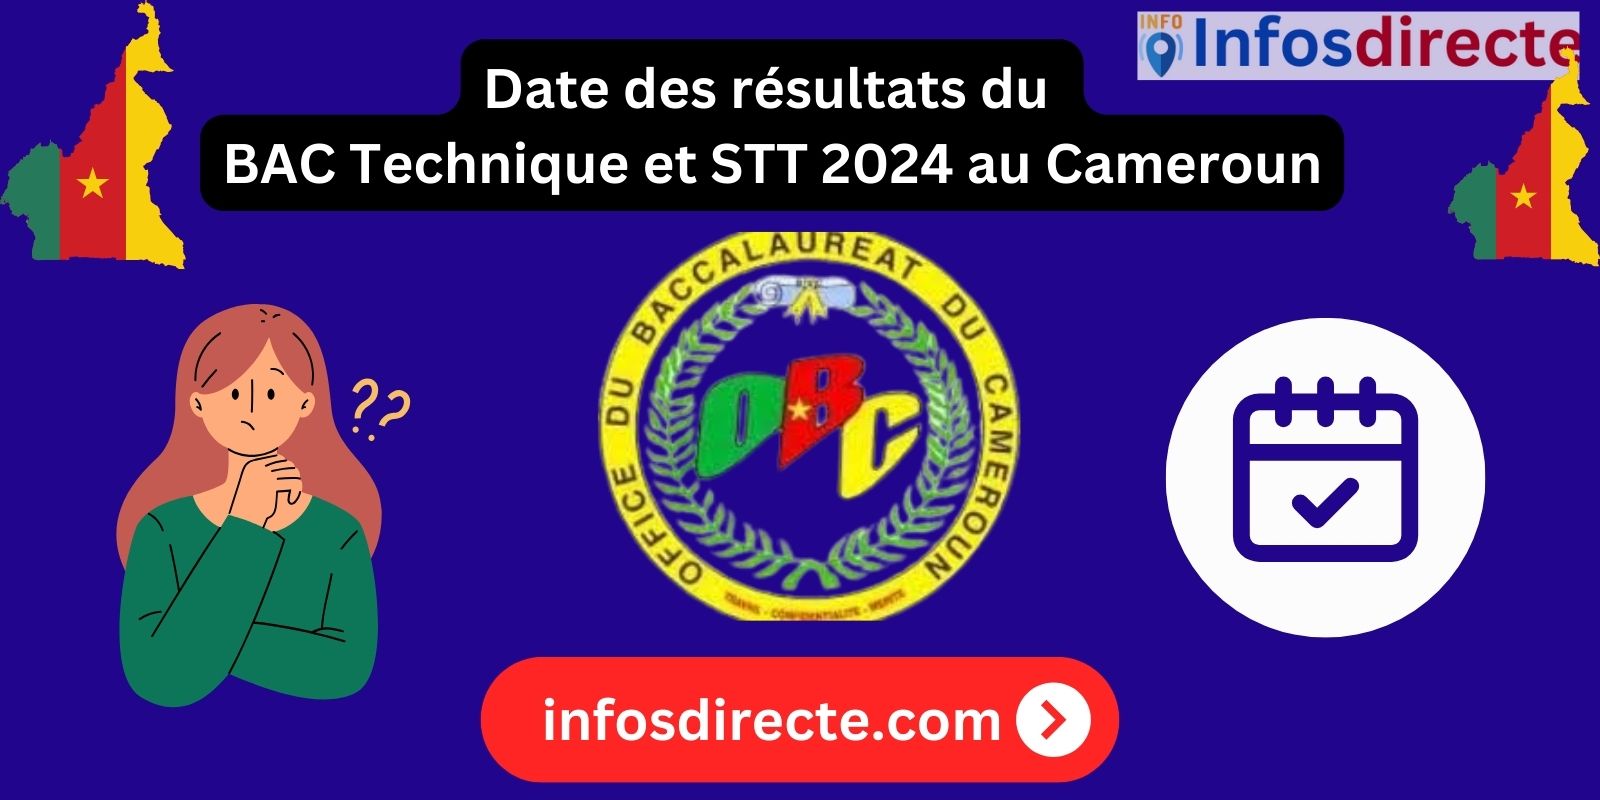 La date des résultats du BAC Technique et STT 2024 au Cameroun connue